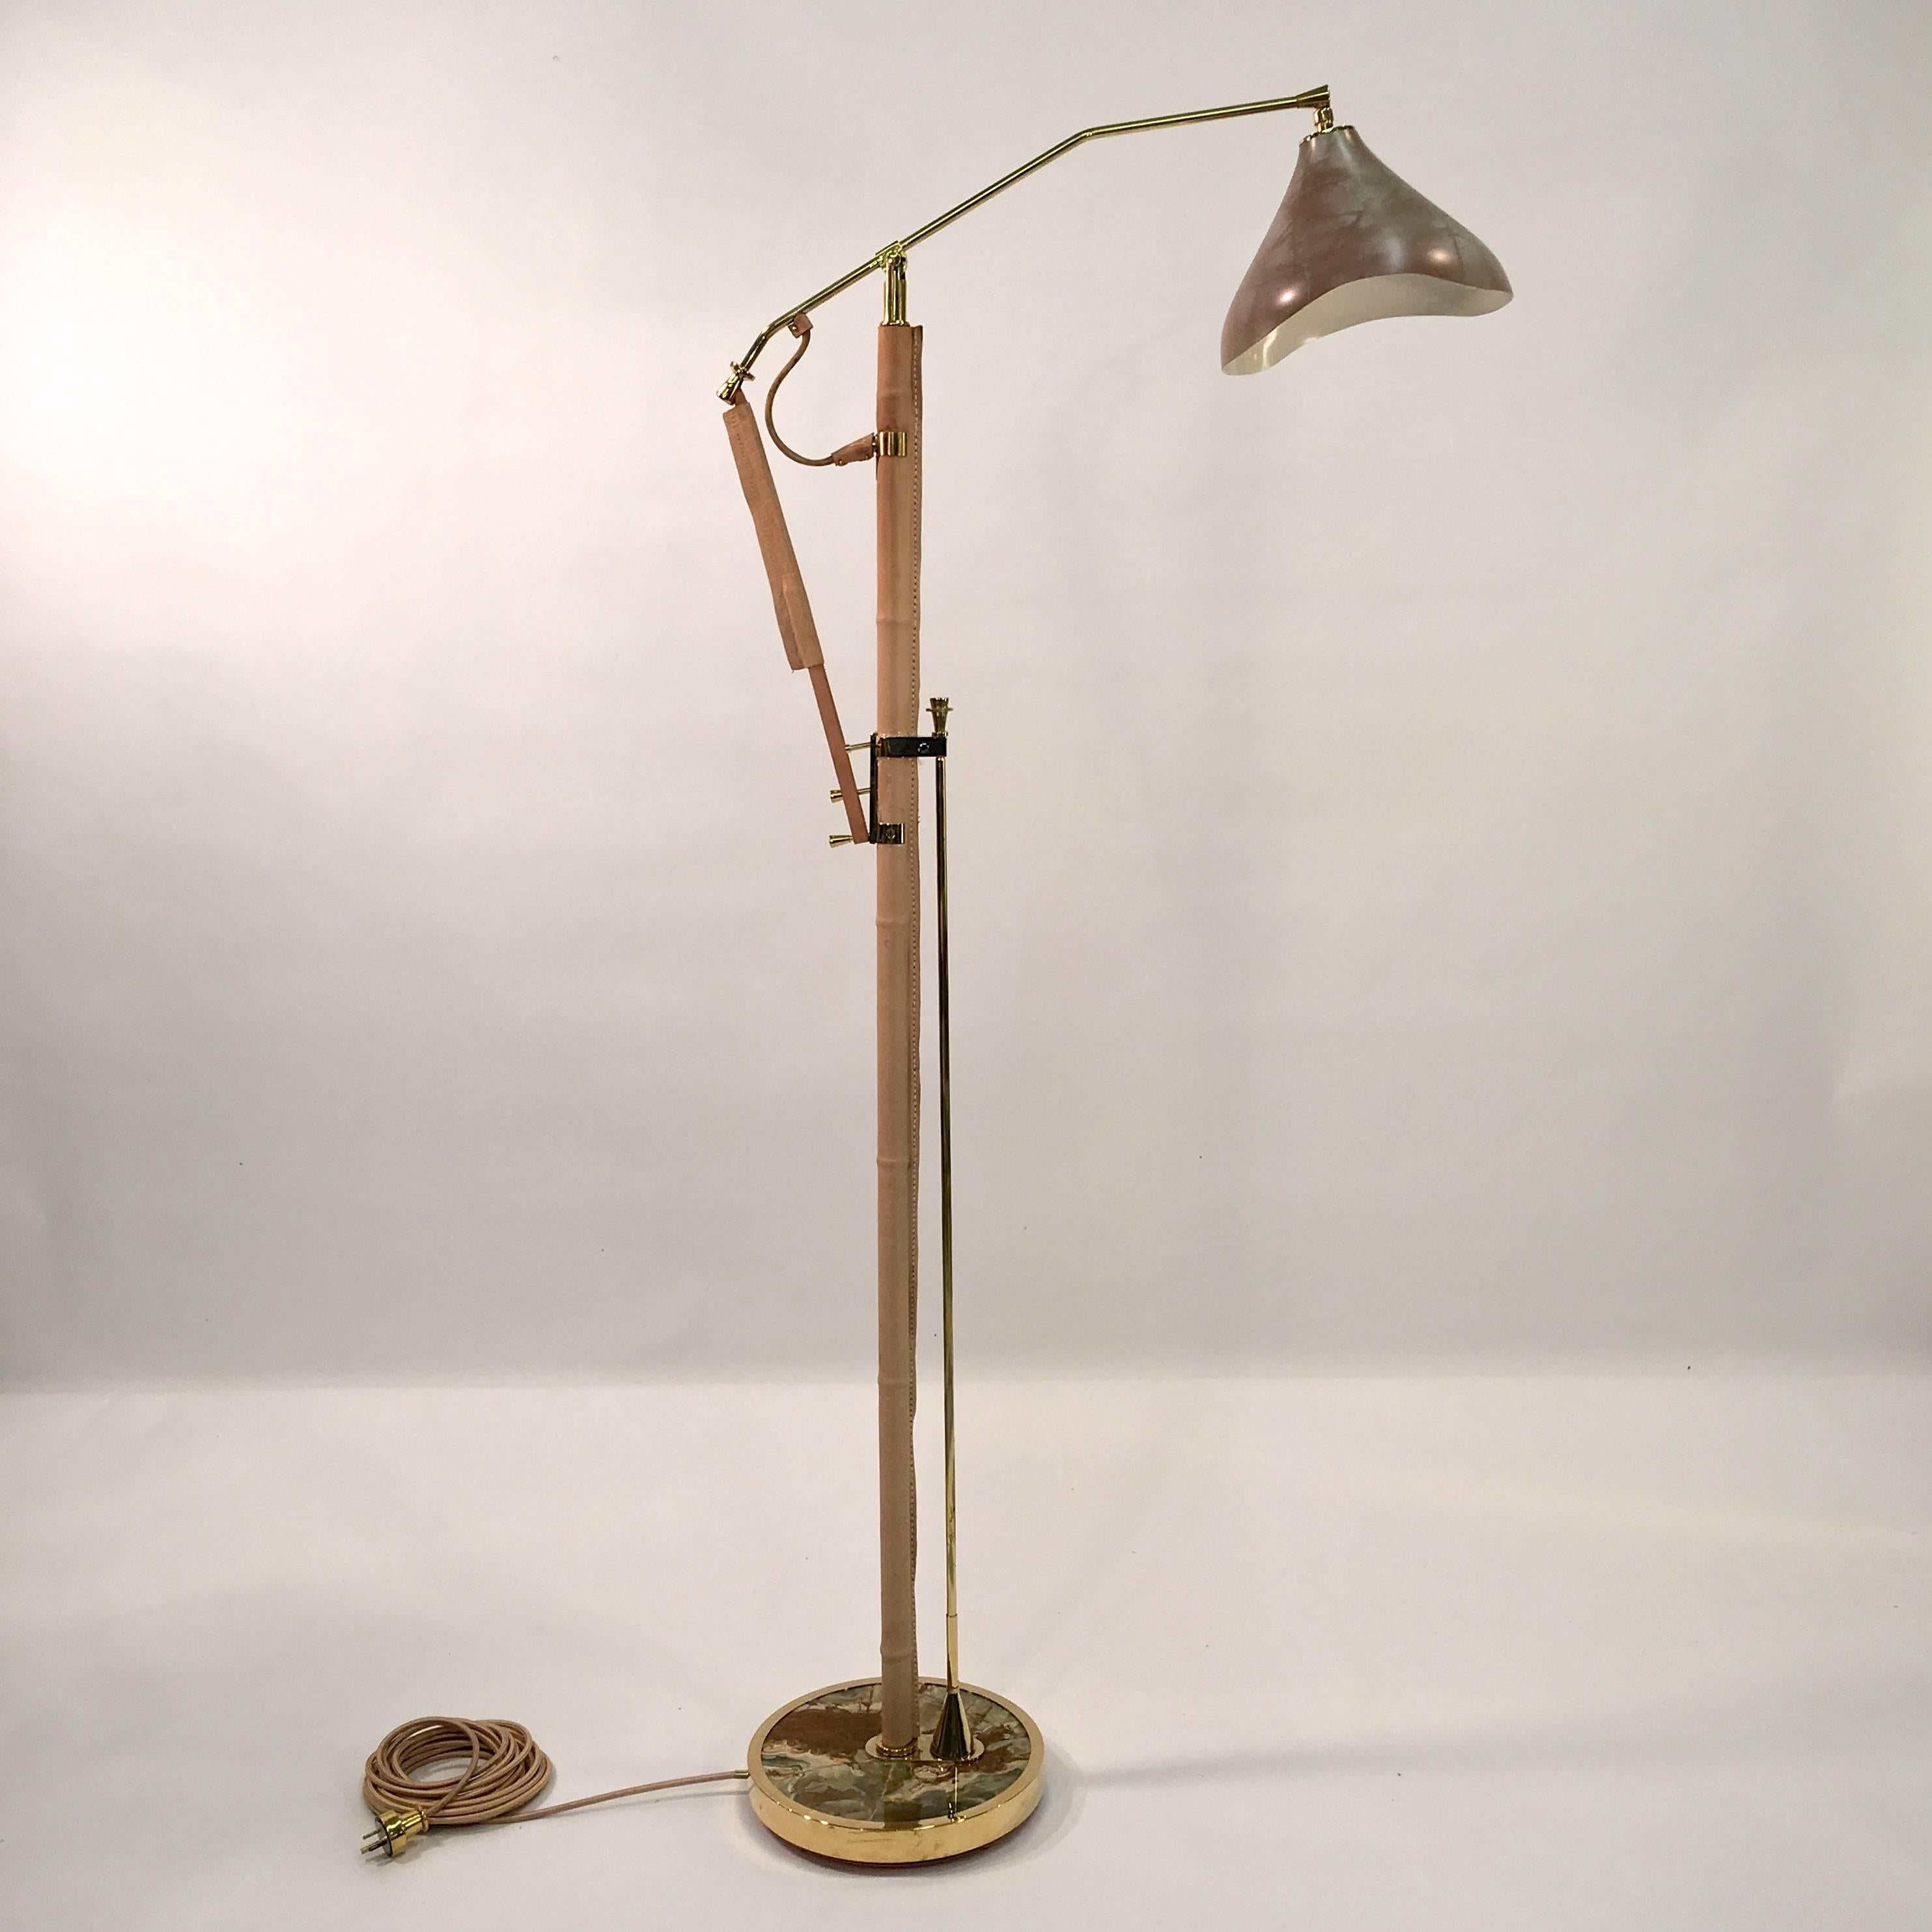 Ce lampadaire est un prototype, dont chaque élément est fabriqué à la main par nos propres maîtres artisans dans notre atelier, selon les normes les plus élevées d'une époque révolue. 

Inspiré par le design français et italien des années 1950, vous